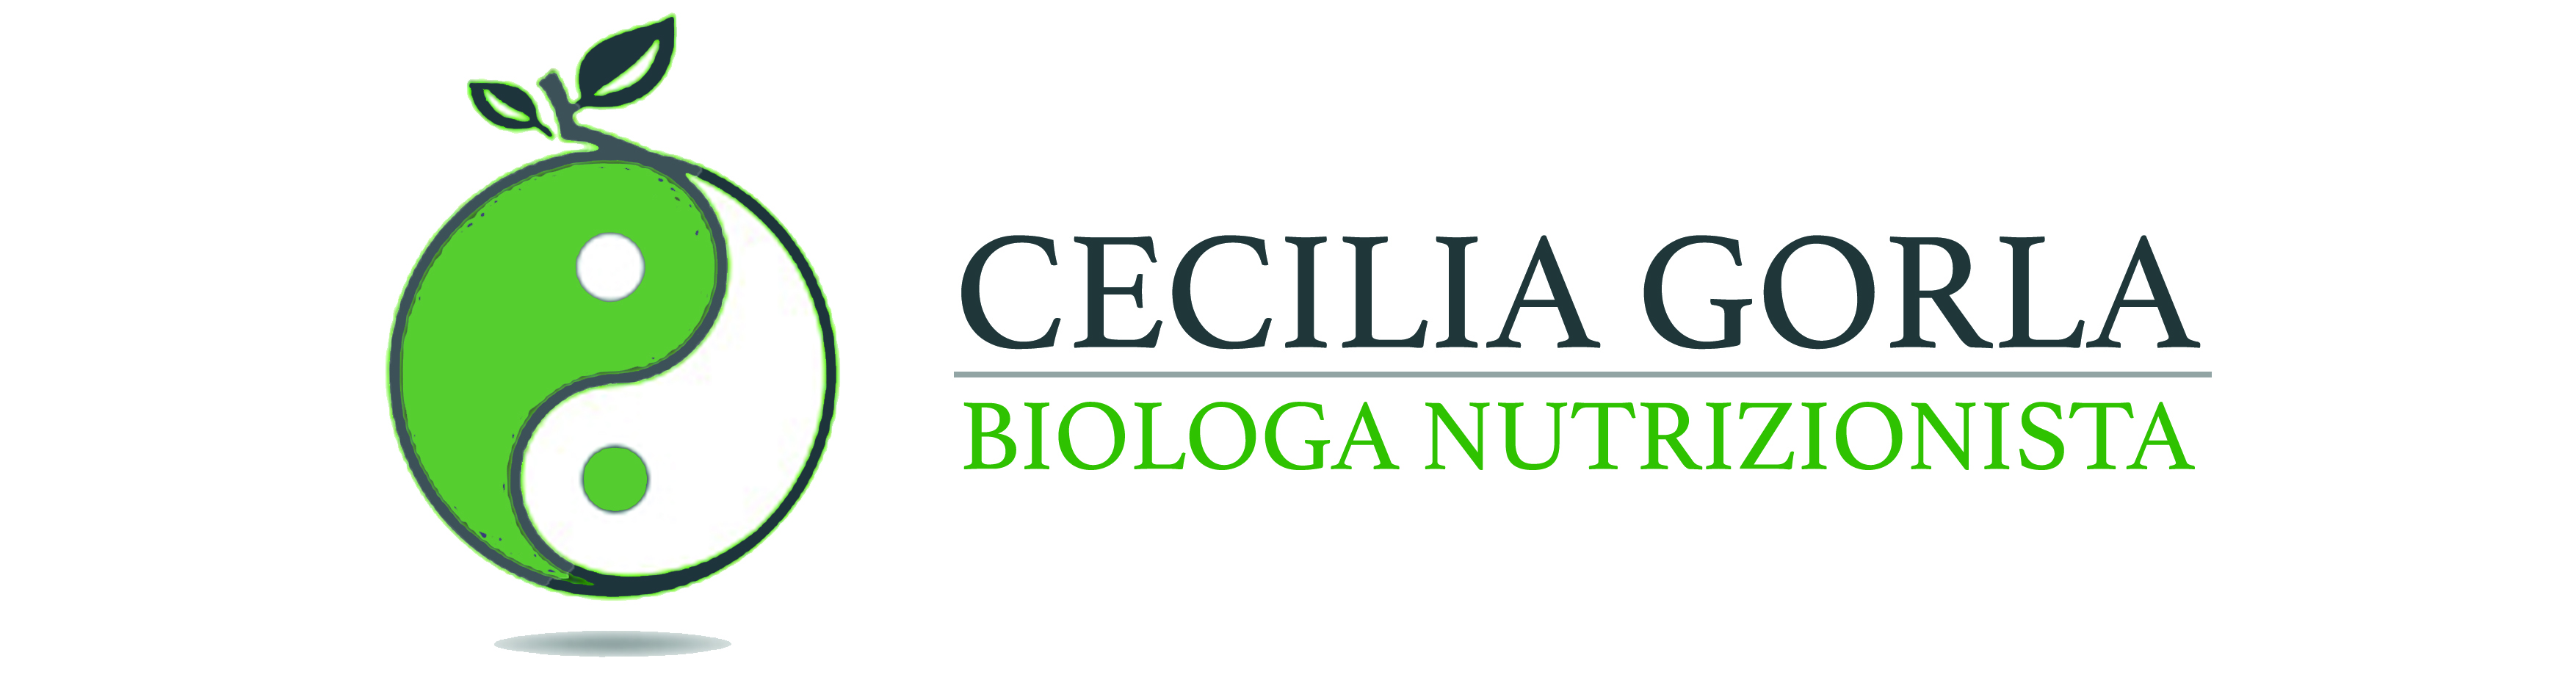 Cecilia Gorla Biologa Nutrizionista